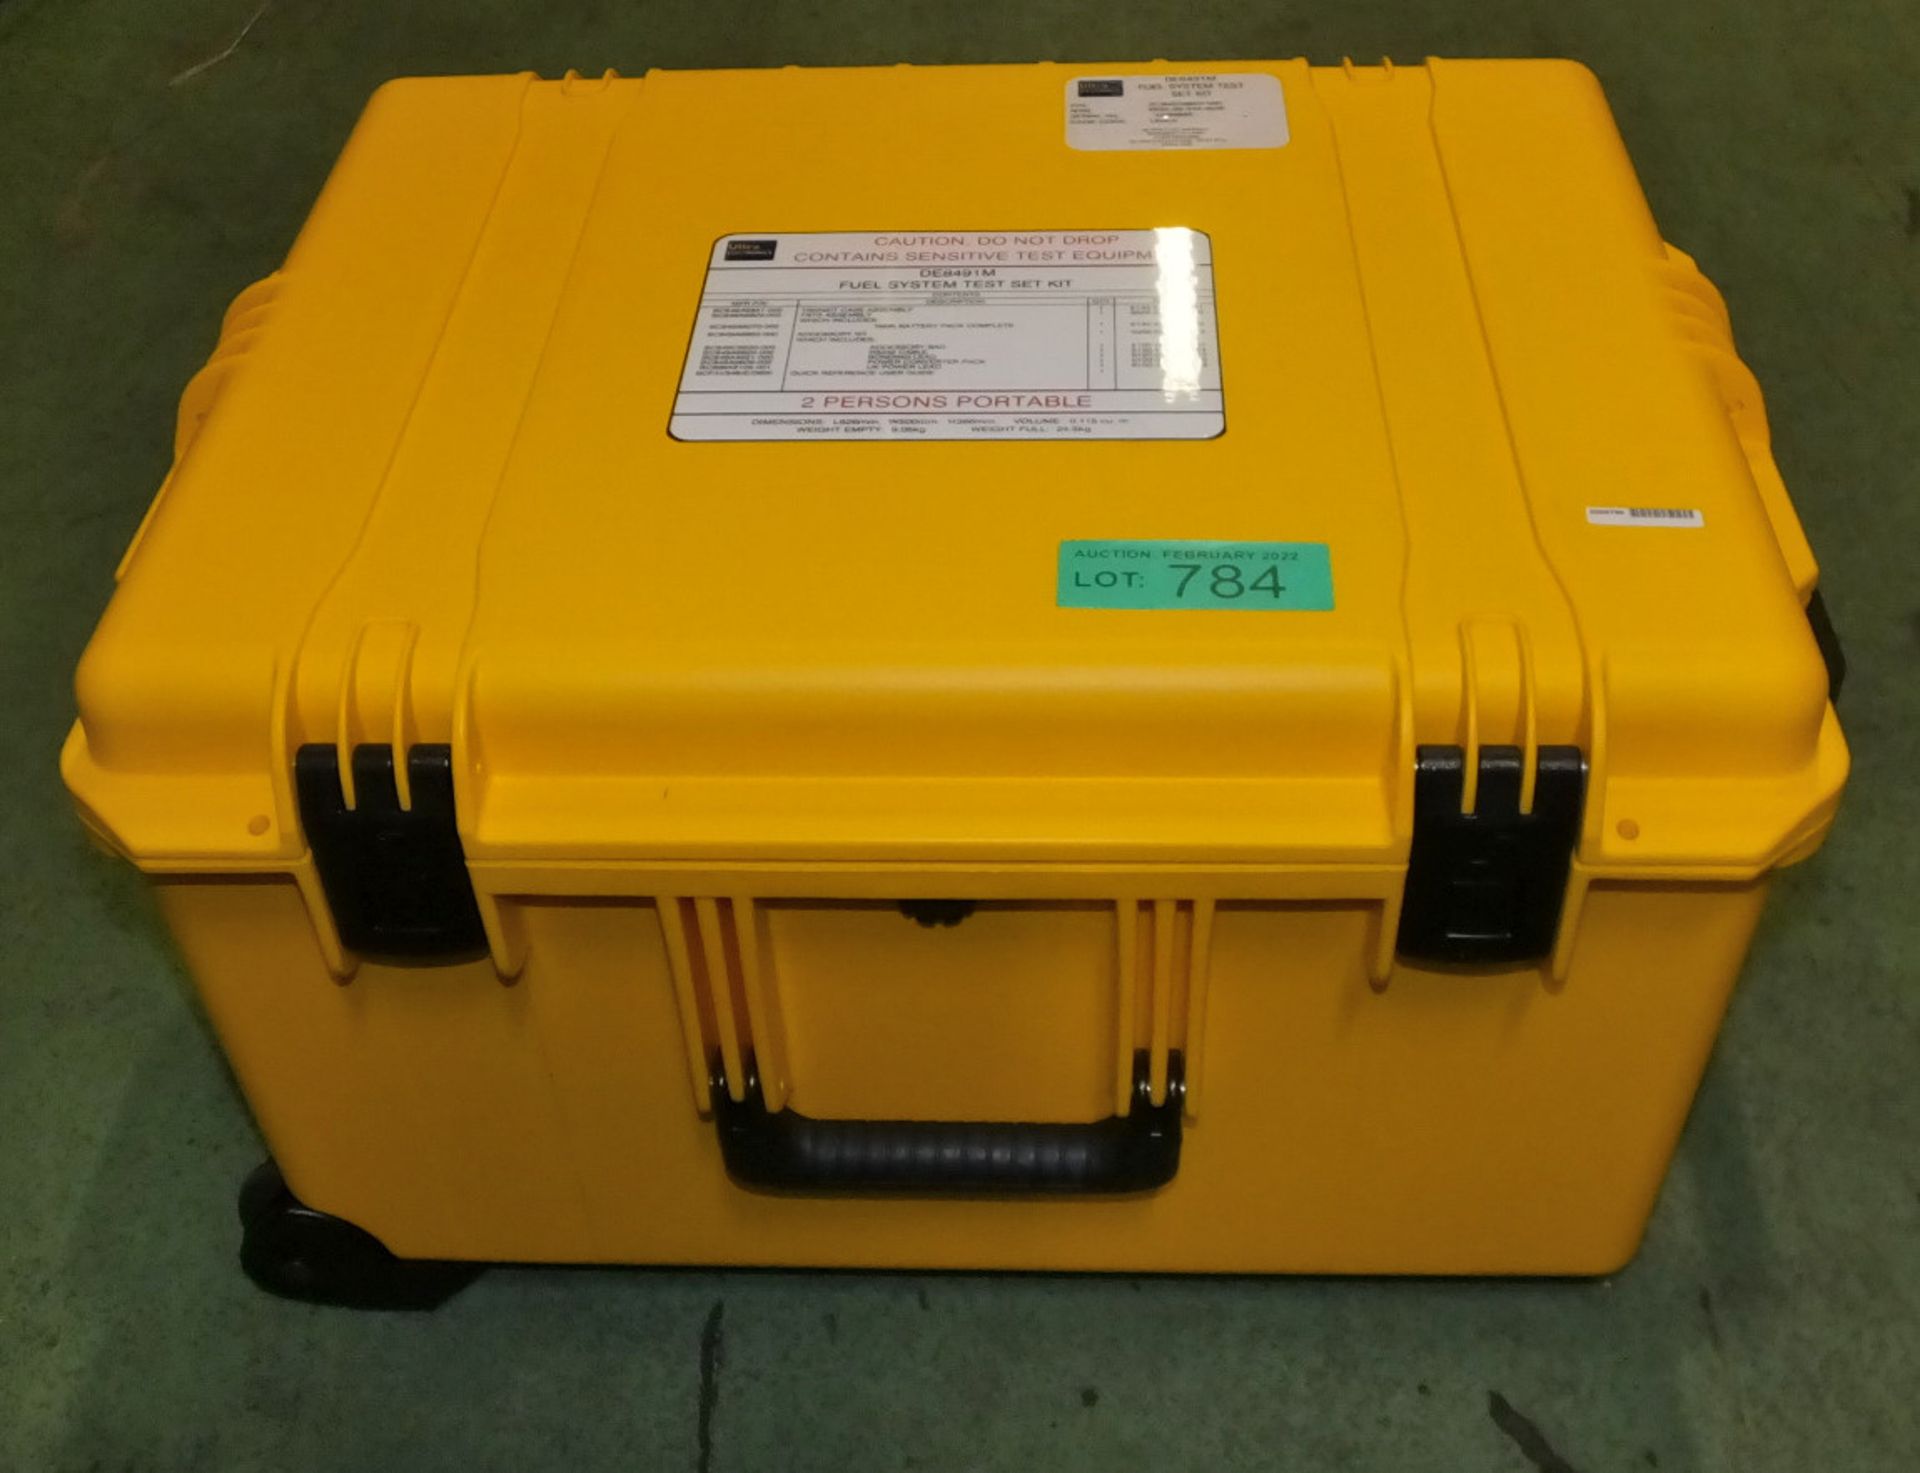 Ultra Electronics DE8491M Fuel System Test Set Kit in heavy duty carry case